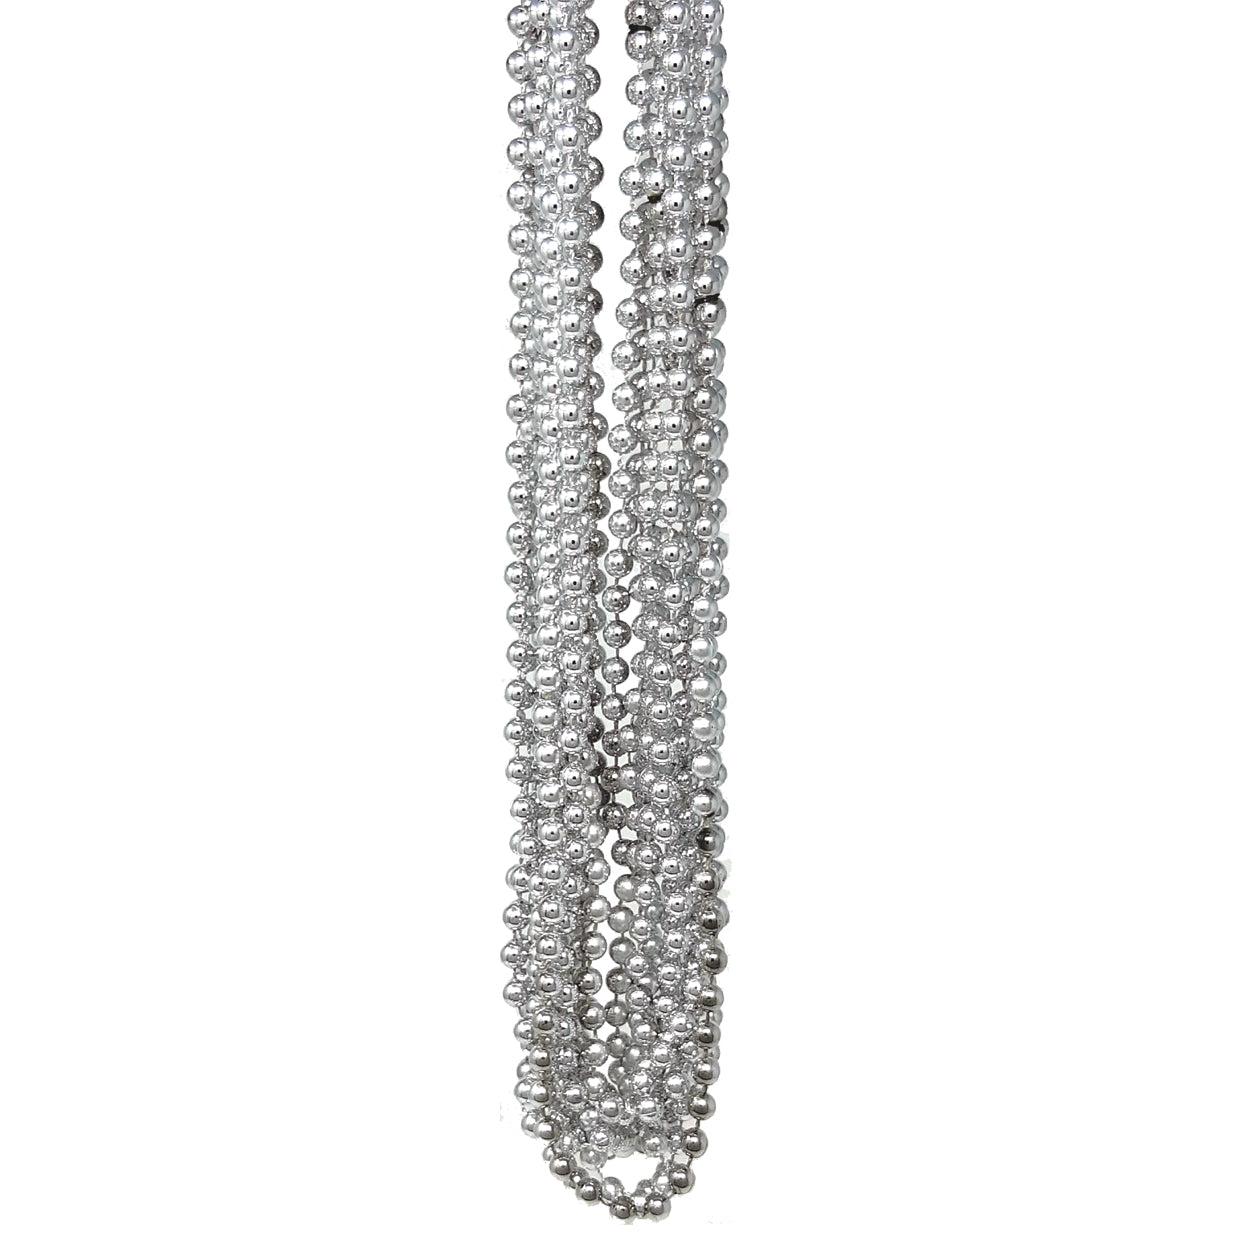 144 Silver Mardi Gras Beads